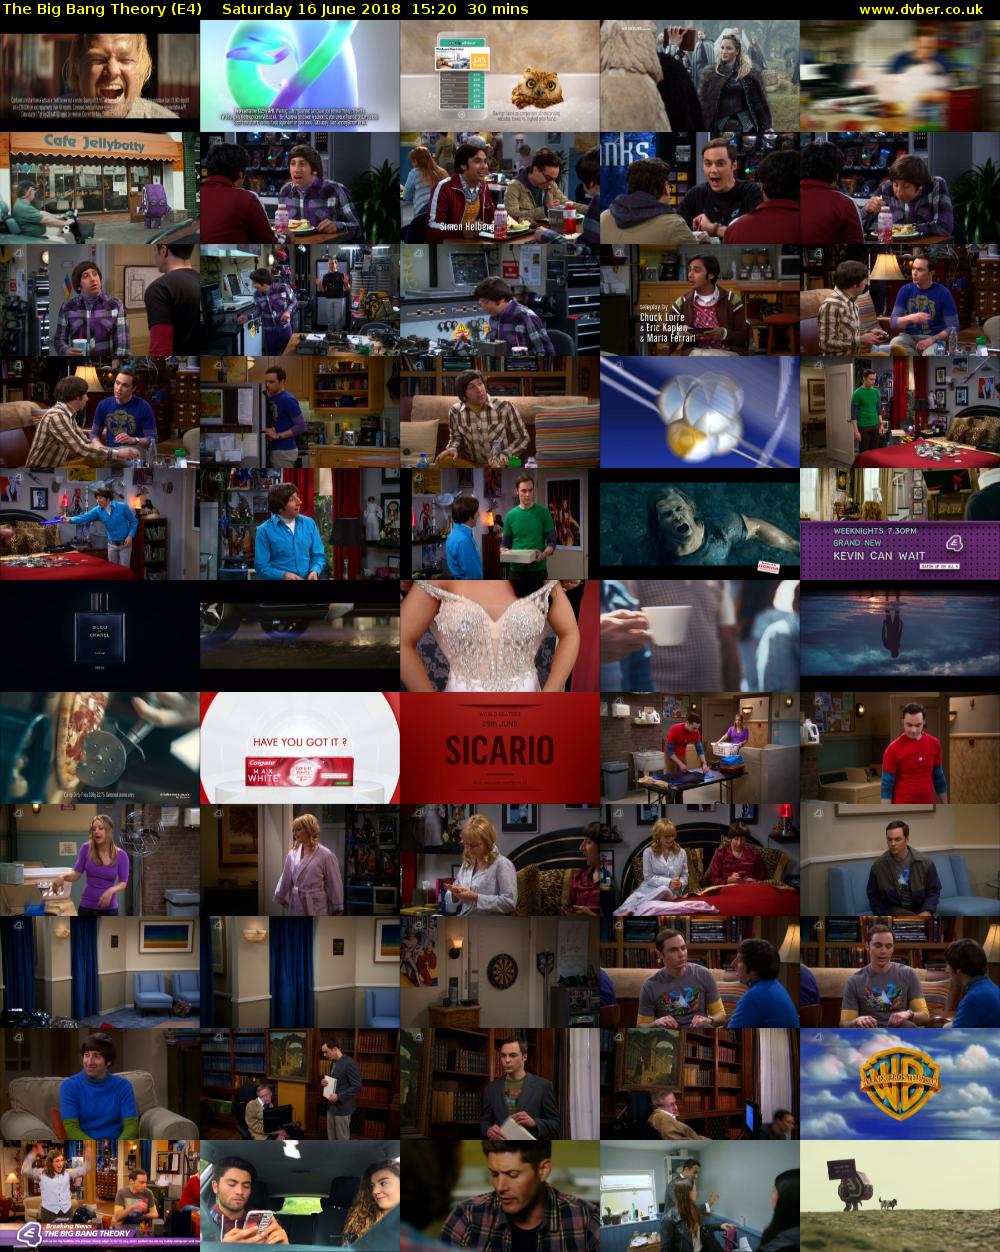 The Big Bang Theory (E4) Saturday 16 June 2018 15:20 - 15:50